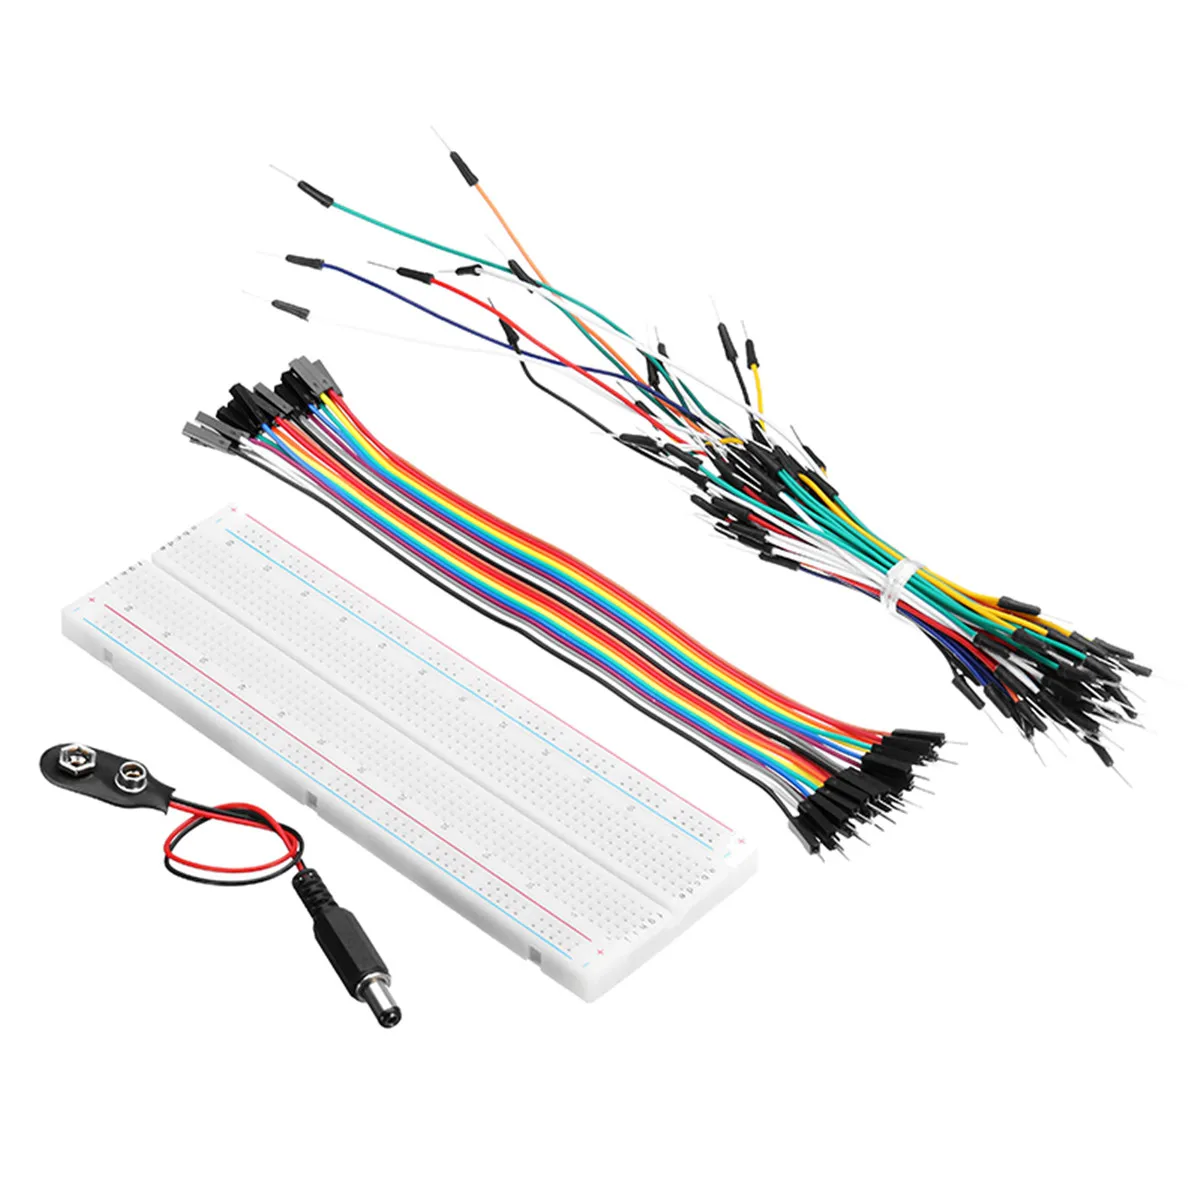 Электронные компоненты Junior Starter наборы с резистором макет модуль питания для Arduino с пластиковой коробкой посылка